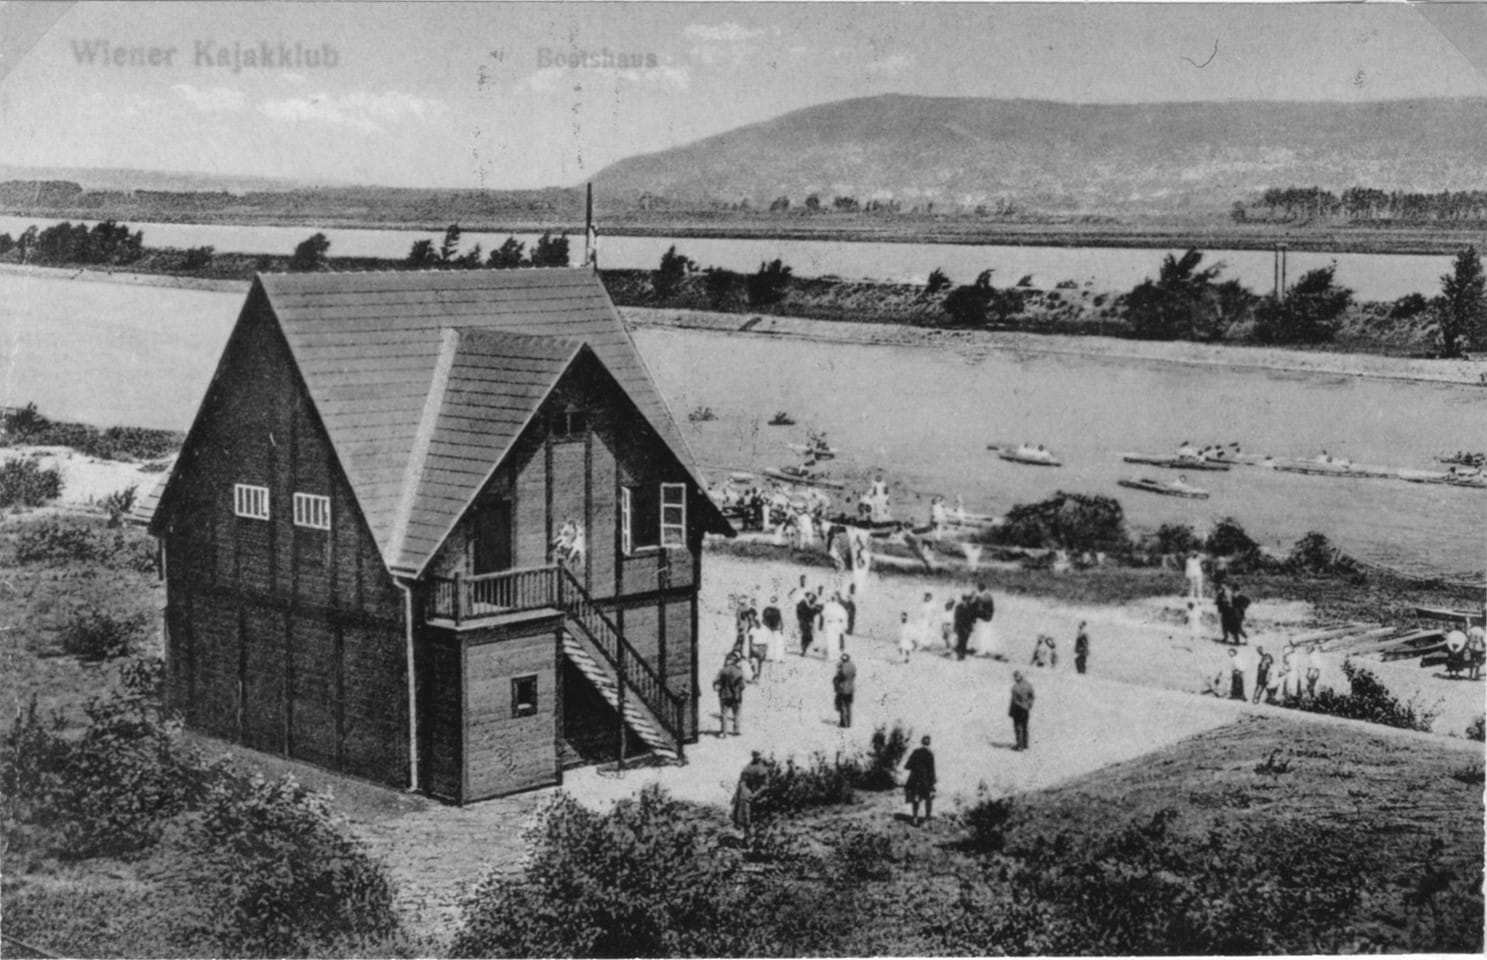 1924-Klubhaus Wr. Kajakklub
Bezirksmuseum Döbling